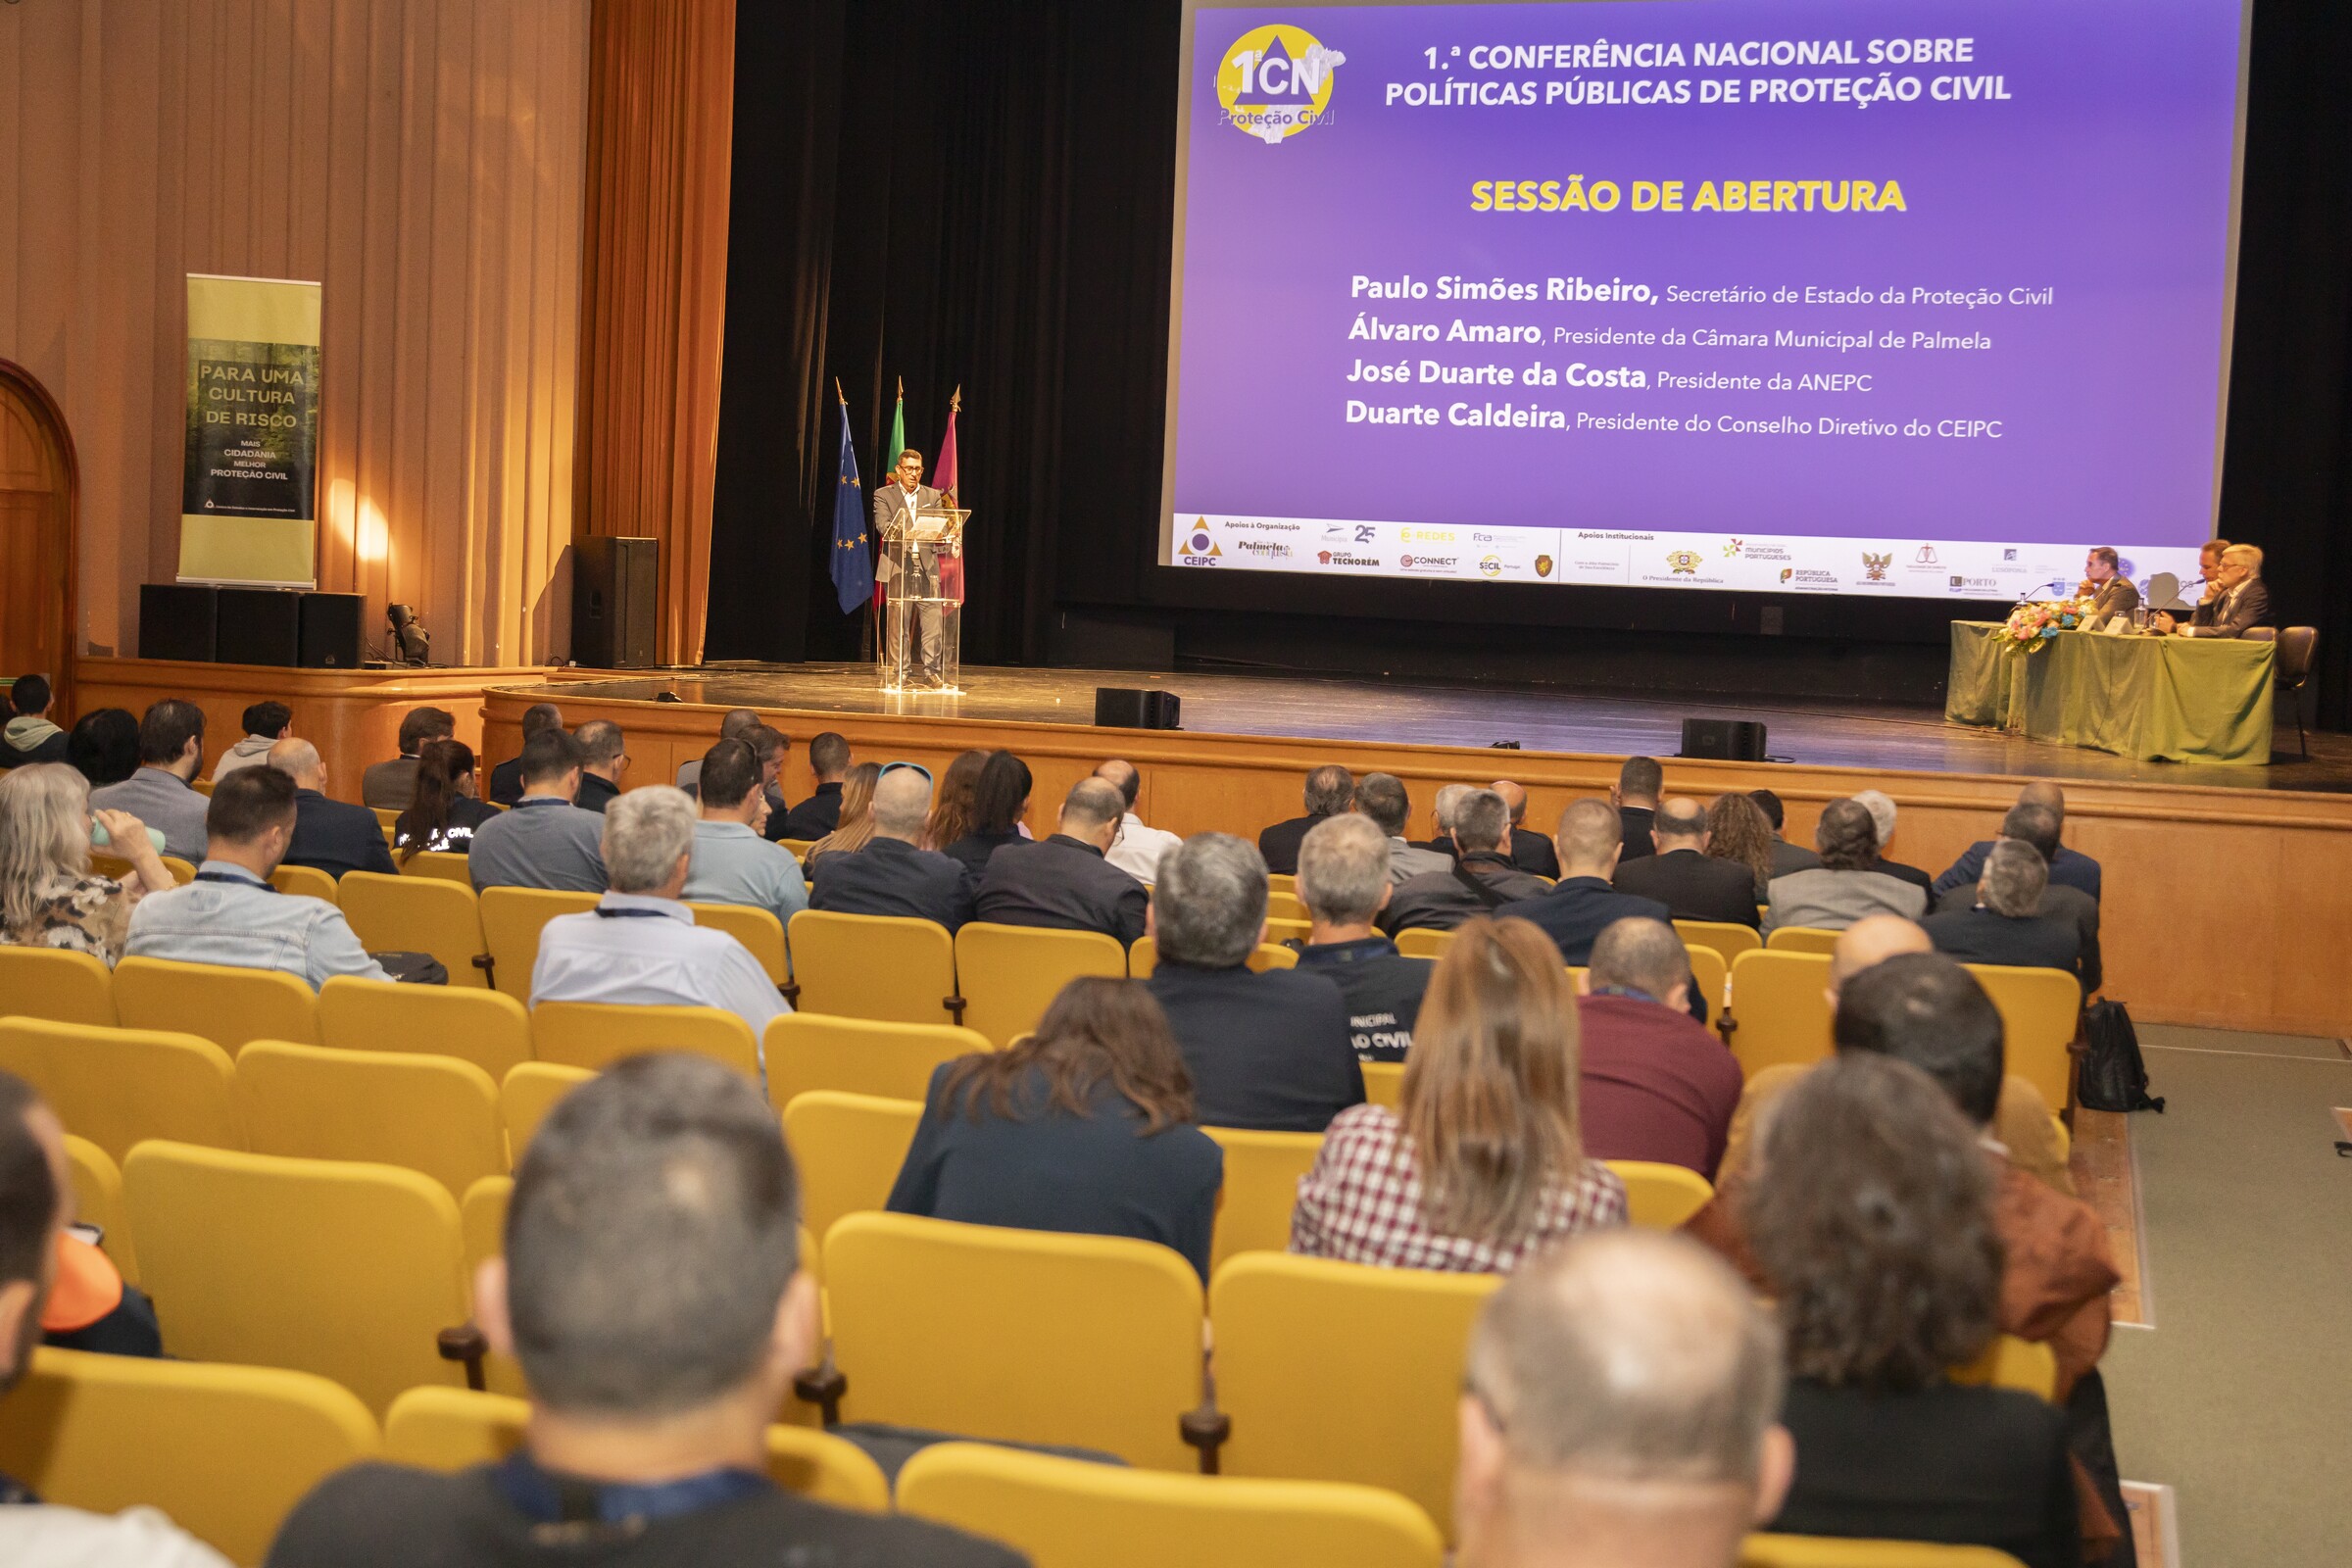 1.ª Conferência Nacional de Proteção Civil destaca papel das autarquias locais